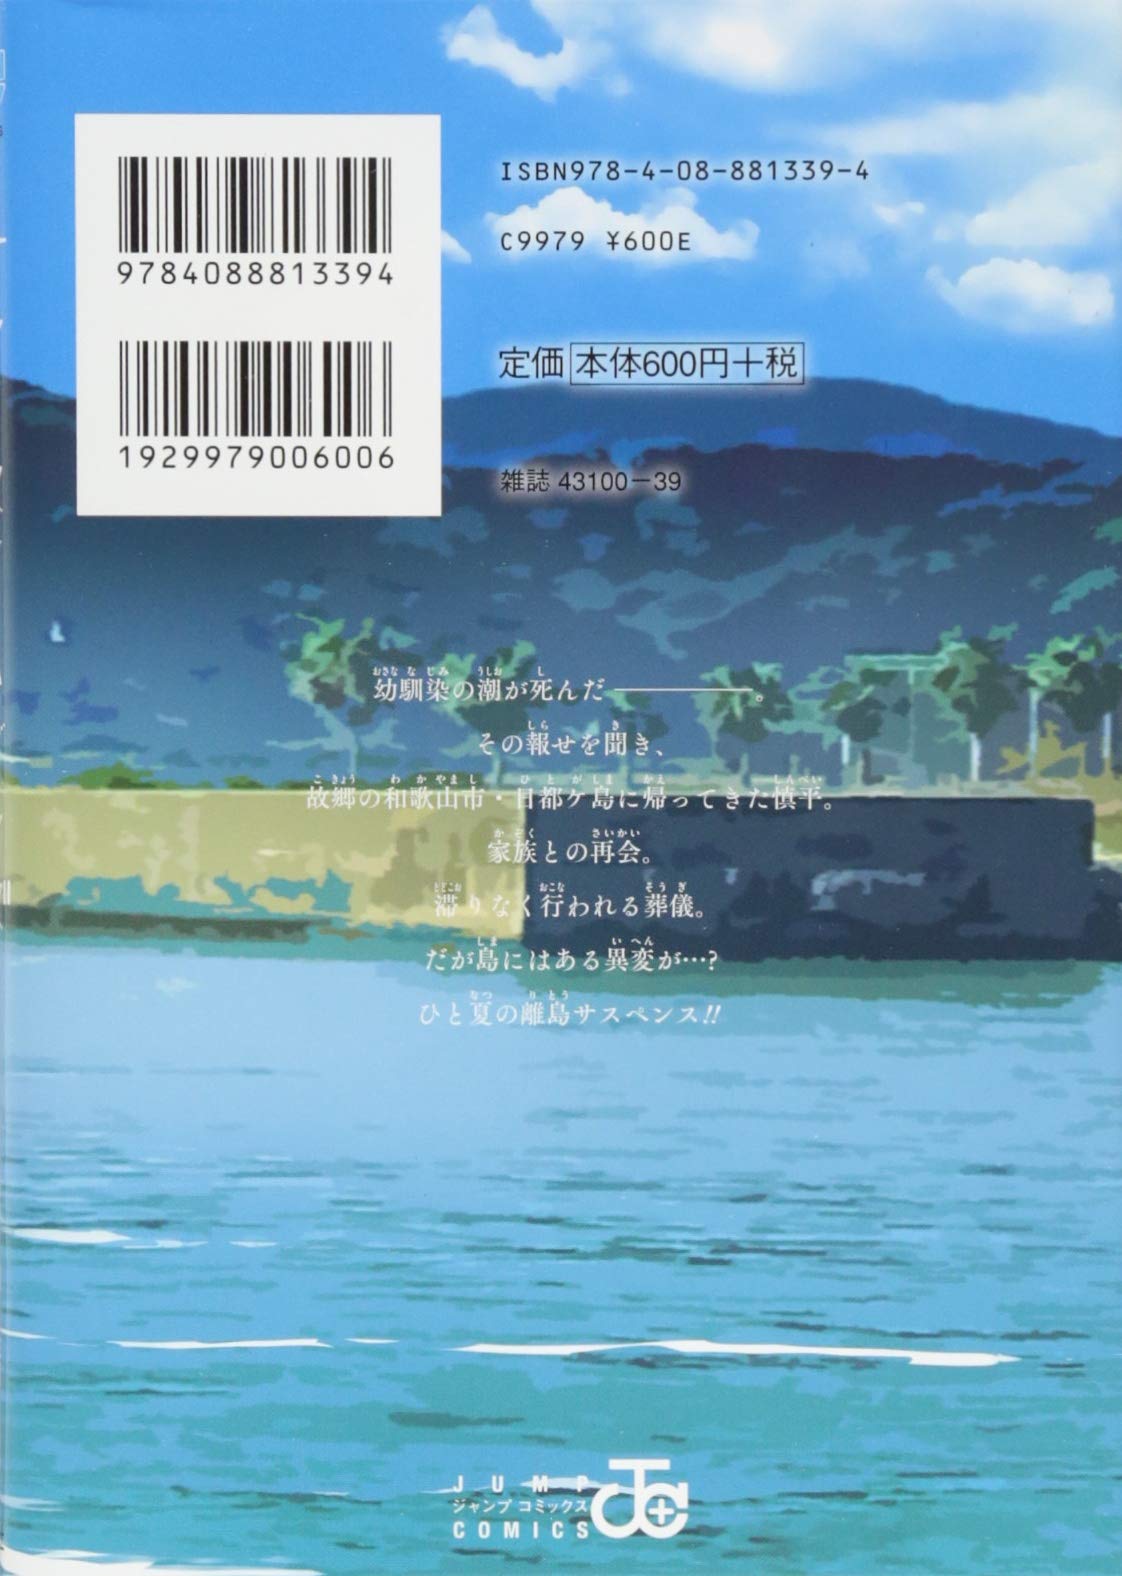 Summertime Rendering Volume 3 (Paperback) by Yasuki Tanaka